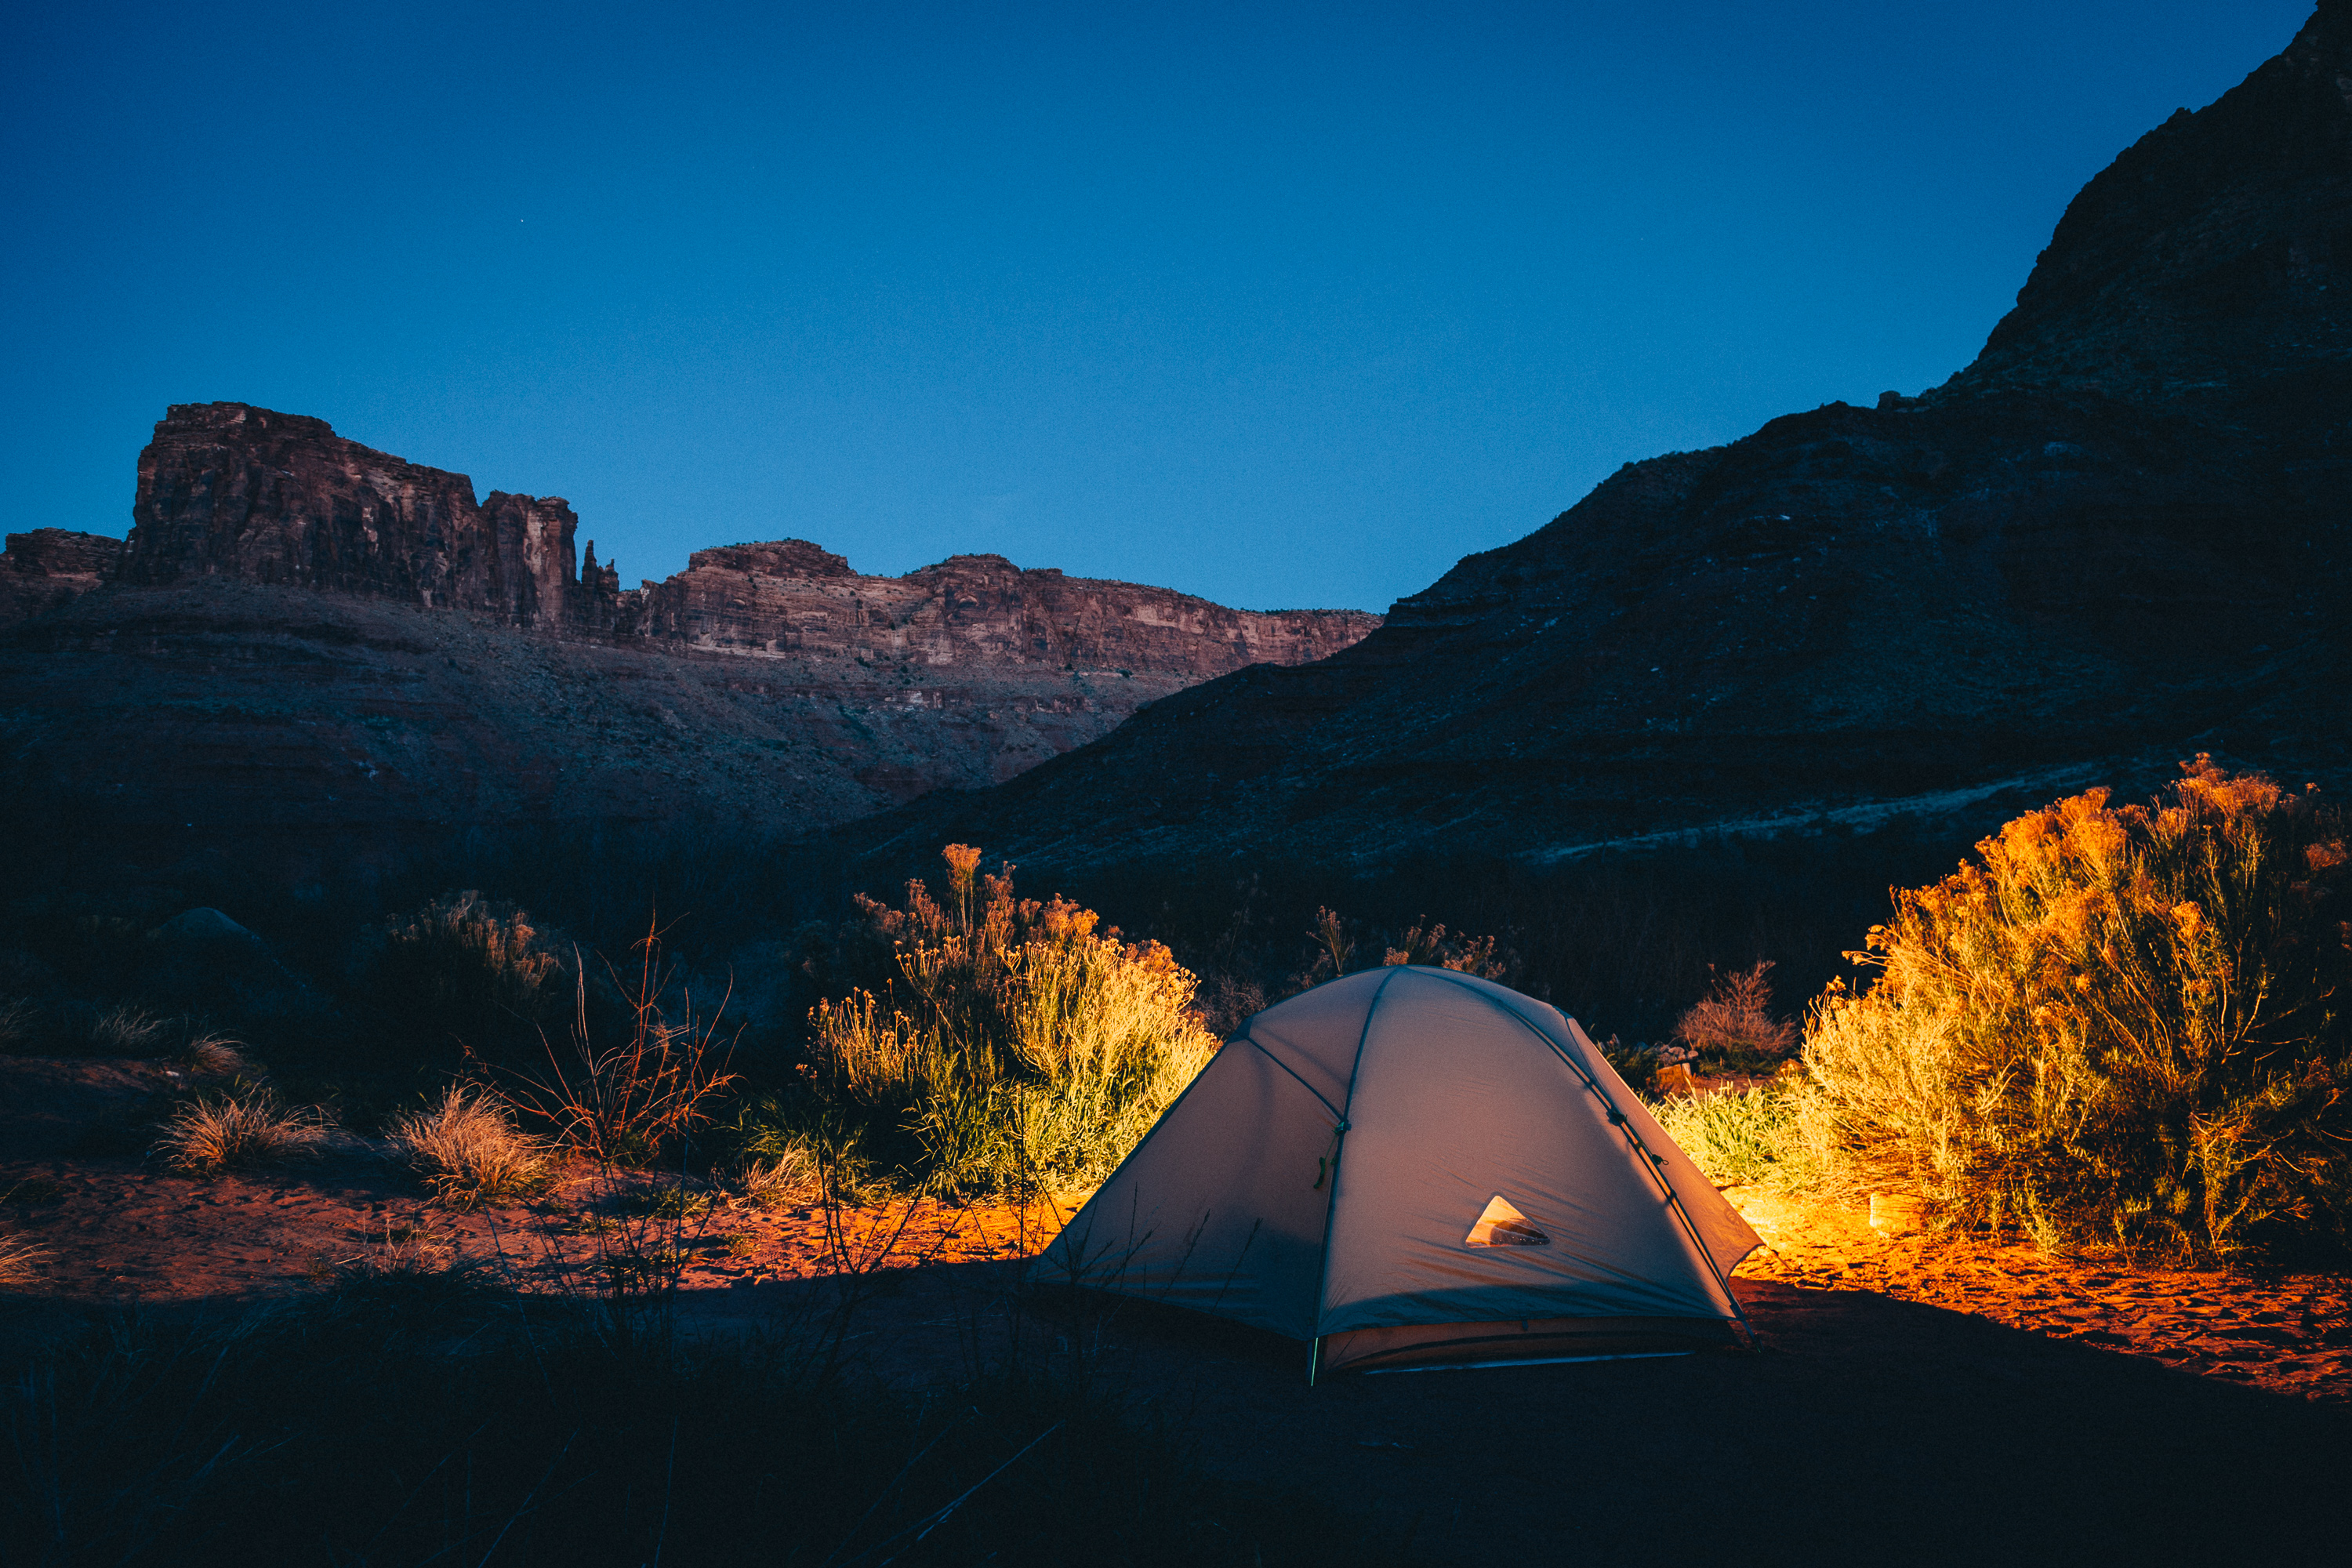 Ein Zelt wird nachts in der freien Natur erleuchtet - wahrscheinlich mit einem Akkustrahler.